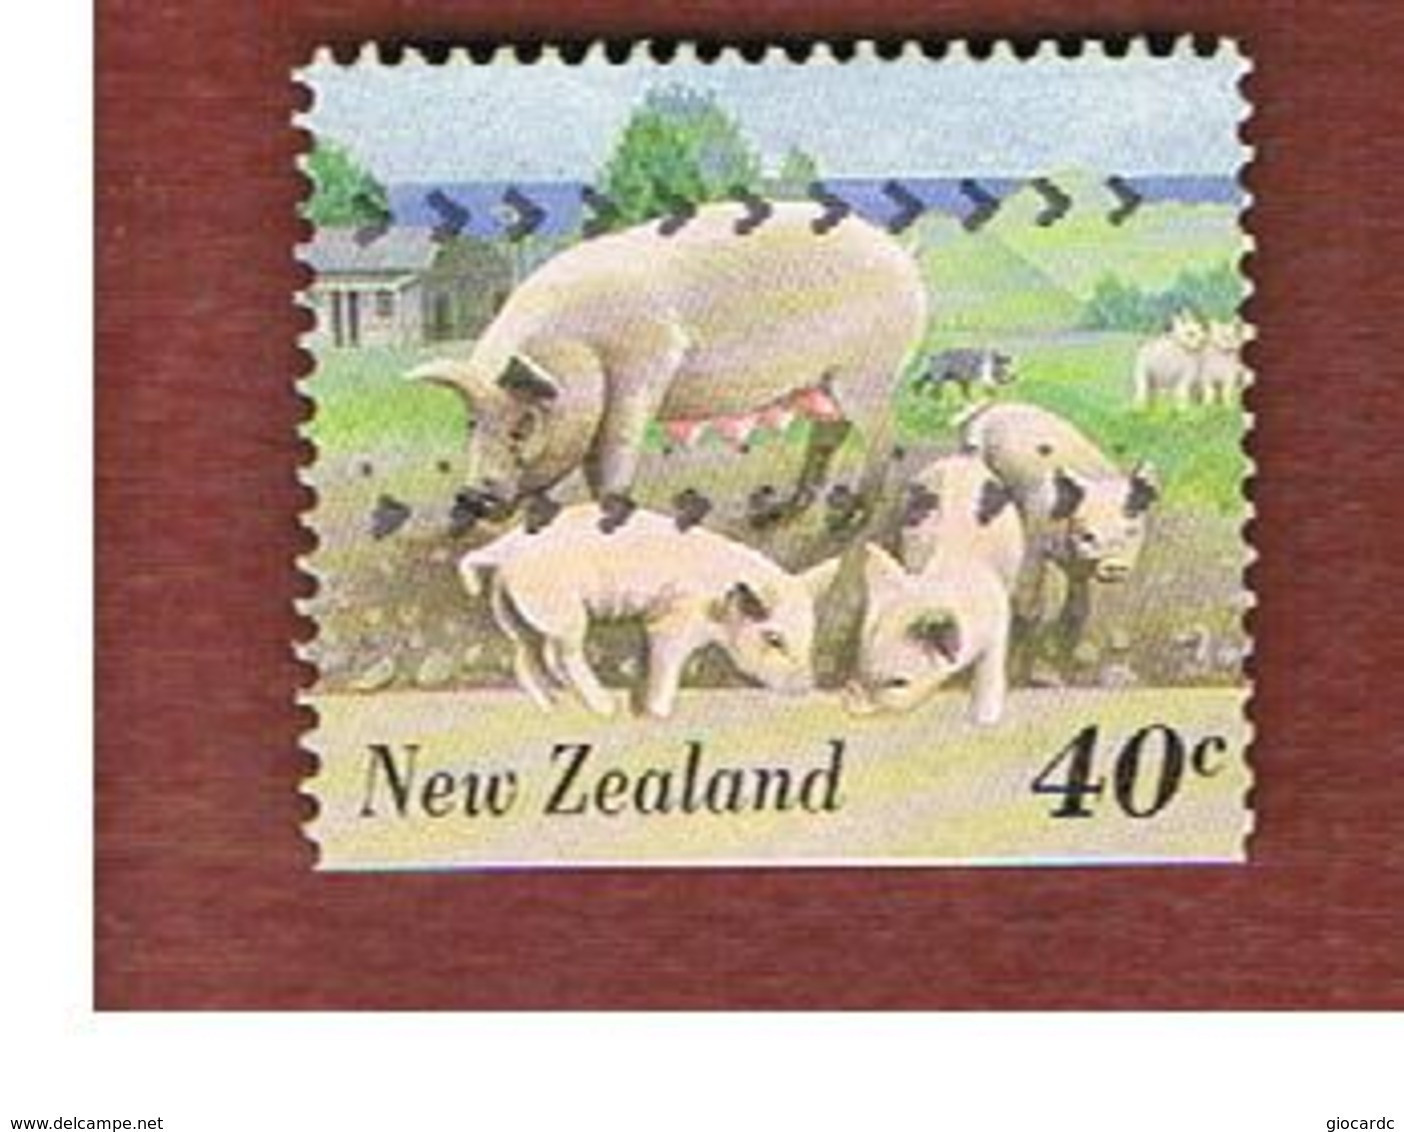 NUOVA ZELANDA (NEW ZEALAND) - SG 1902 -  1995 FARMYARD ANIMALS: SOW    -  USED° - Used Stamps